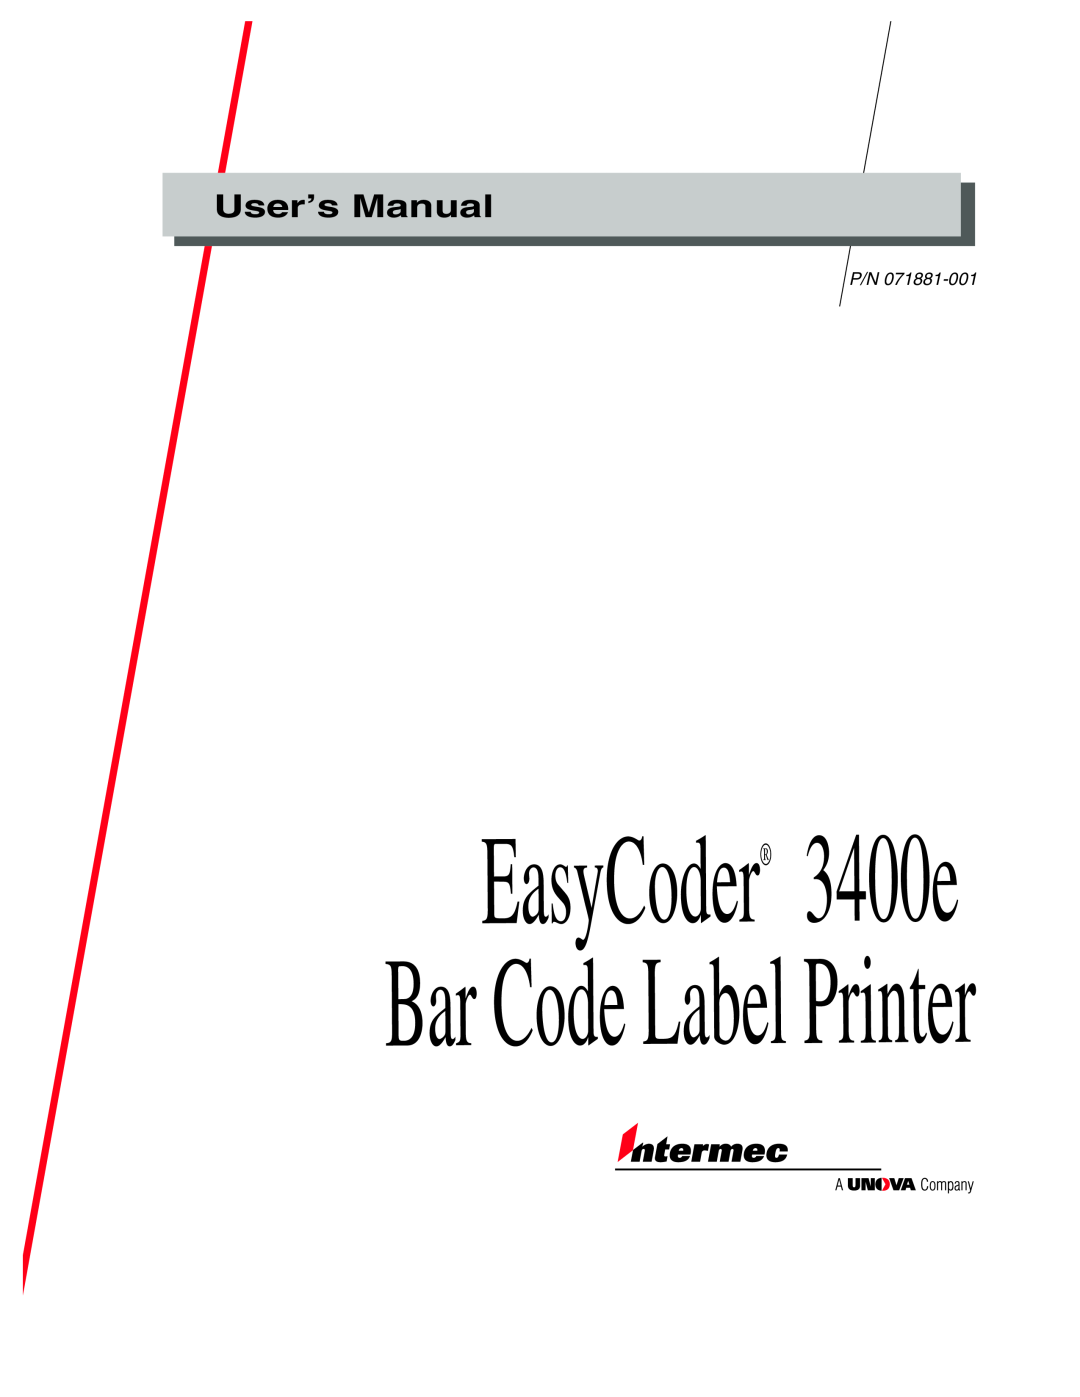 IBM user manual EasyCoder 3400e Bar Code Label Printer, User’s Manual 